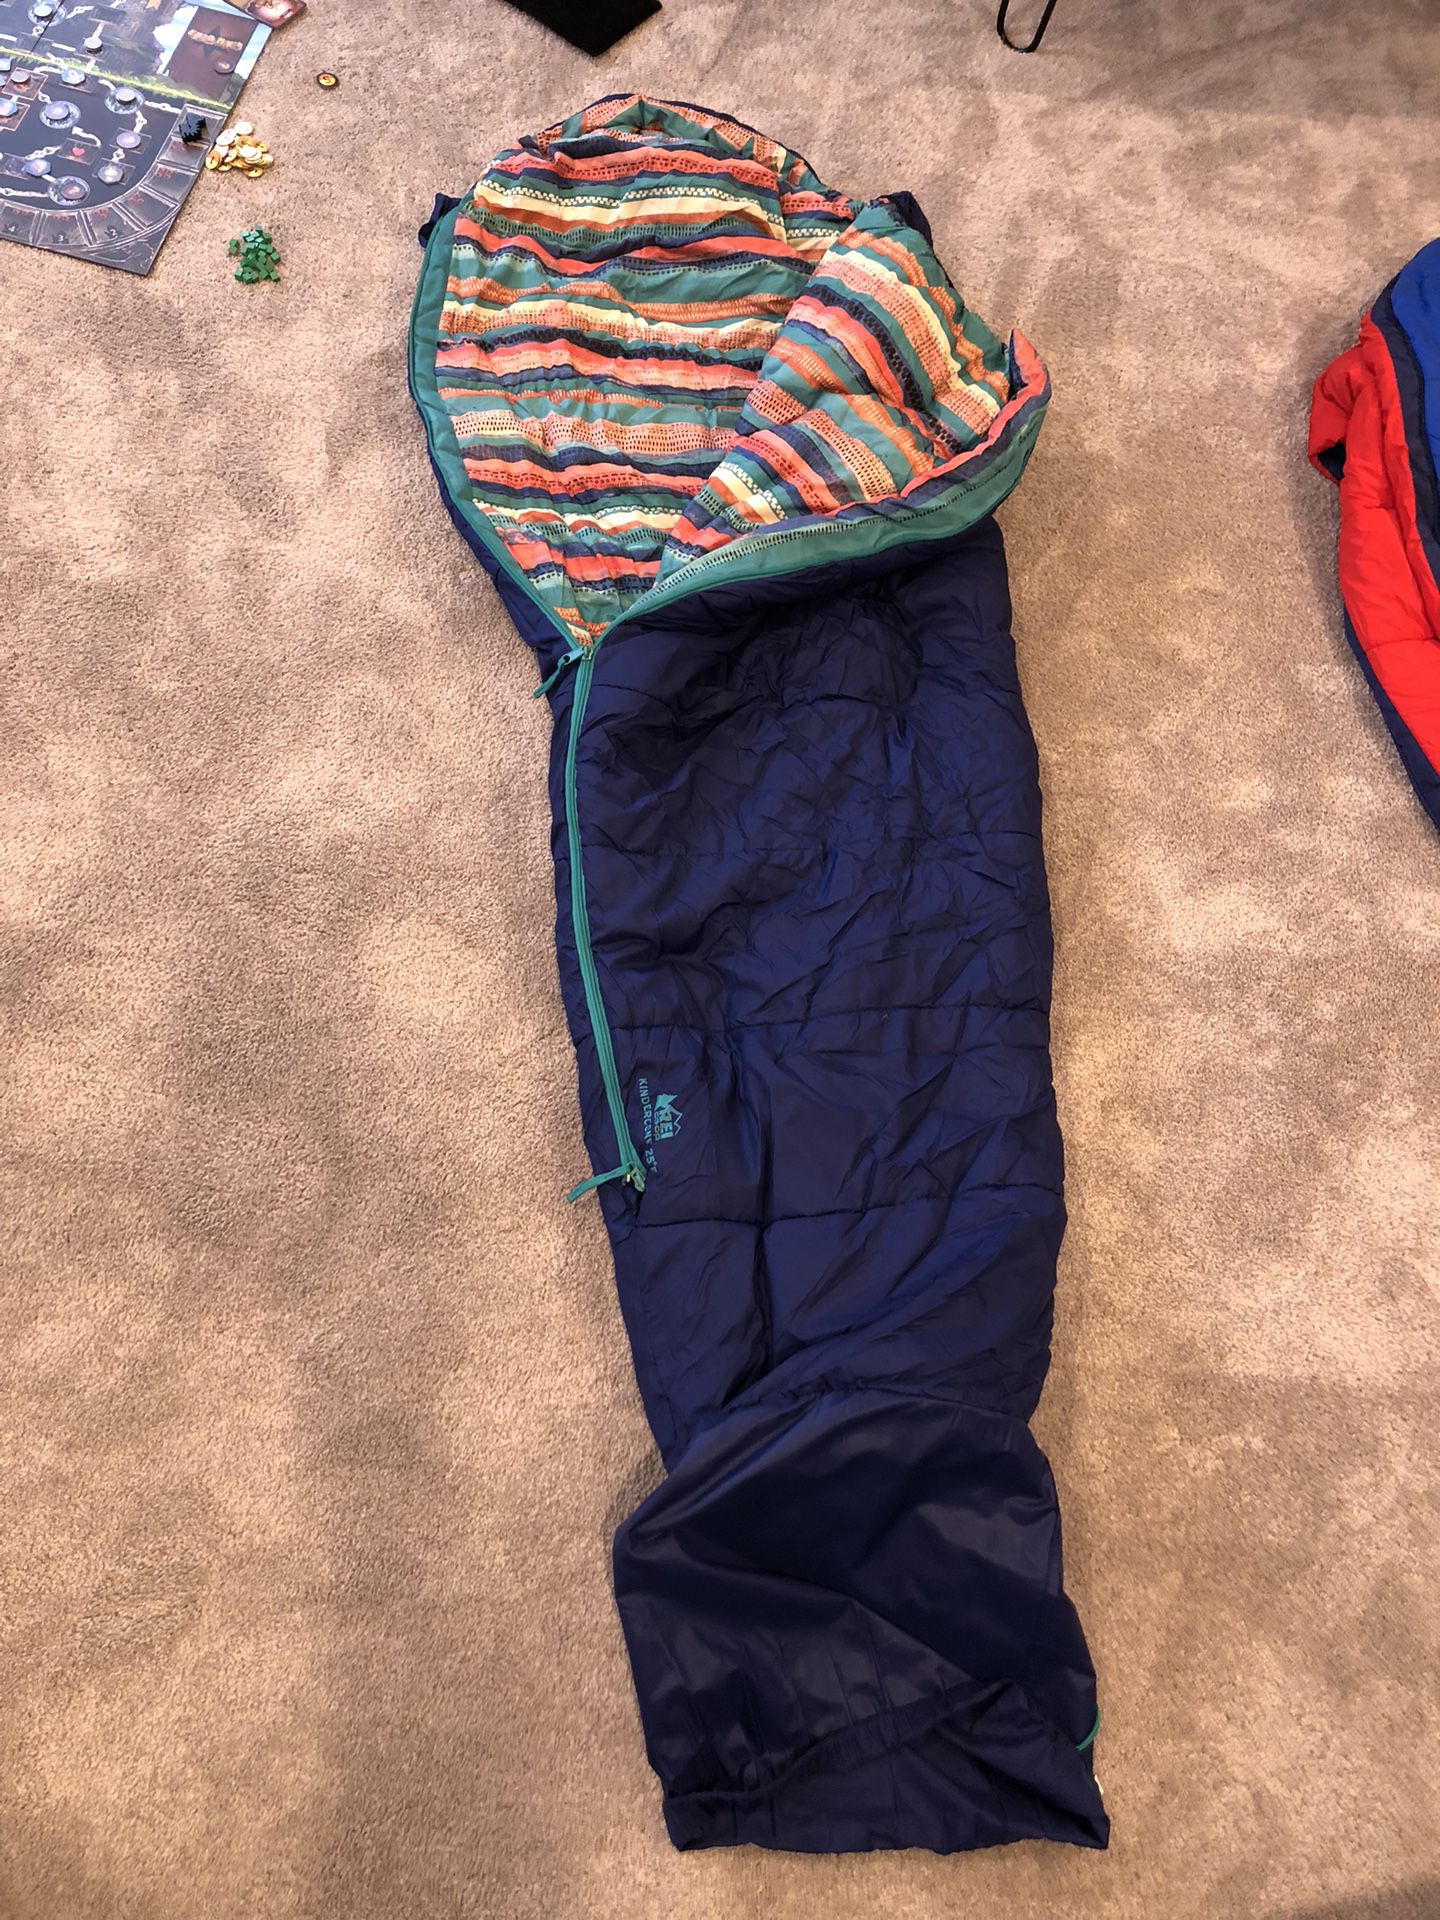 REI Kindercone Sleeping Bags (25 Degrees) 